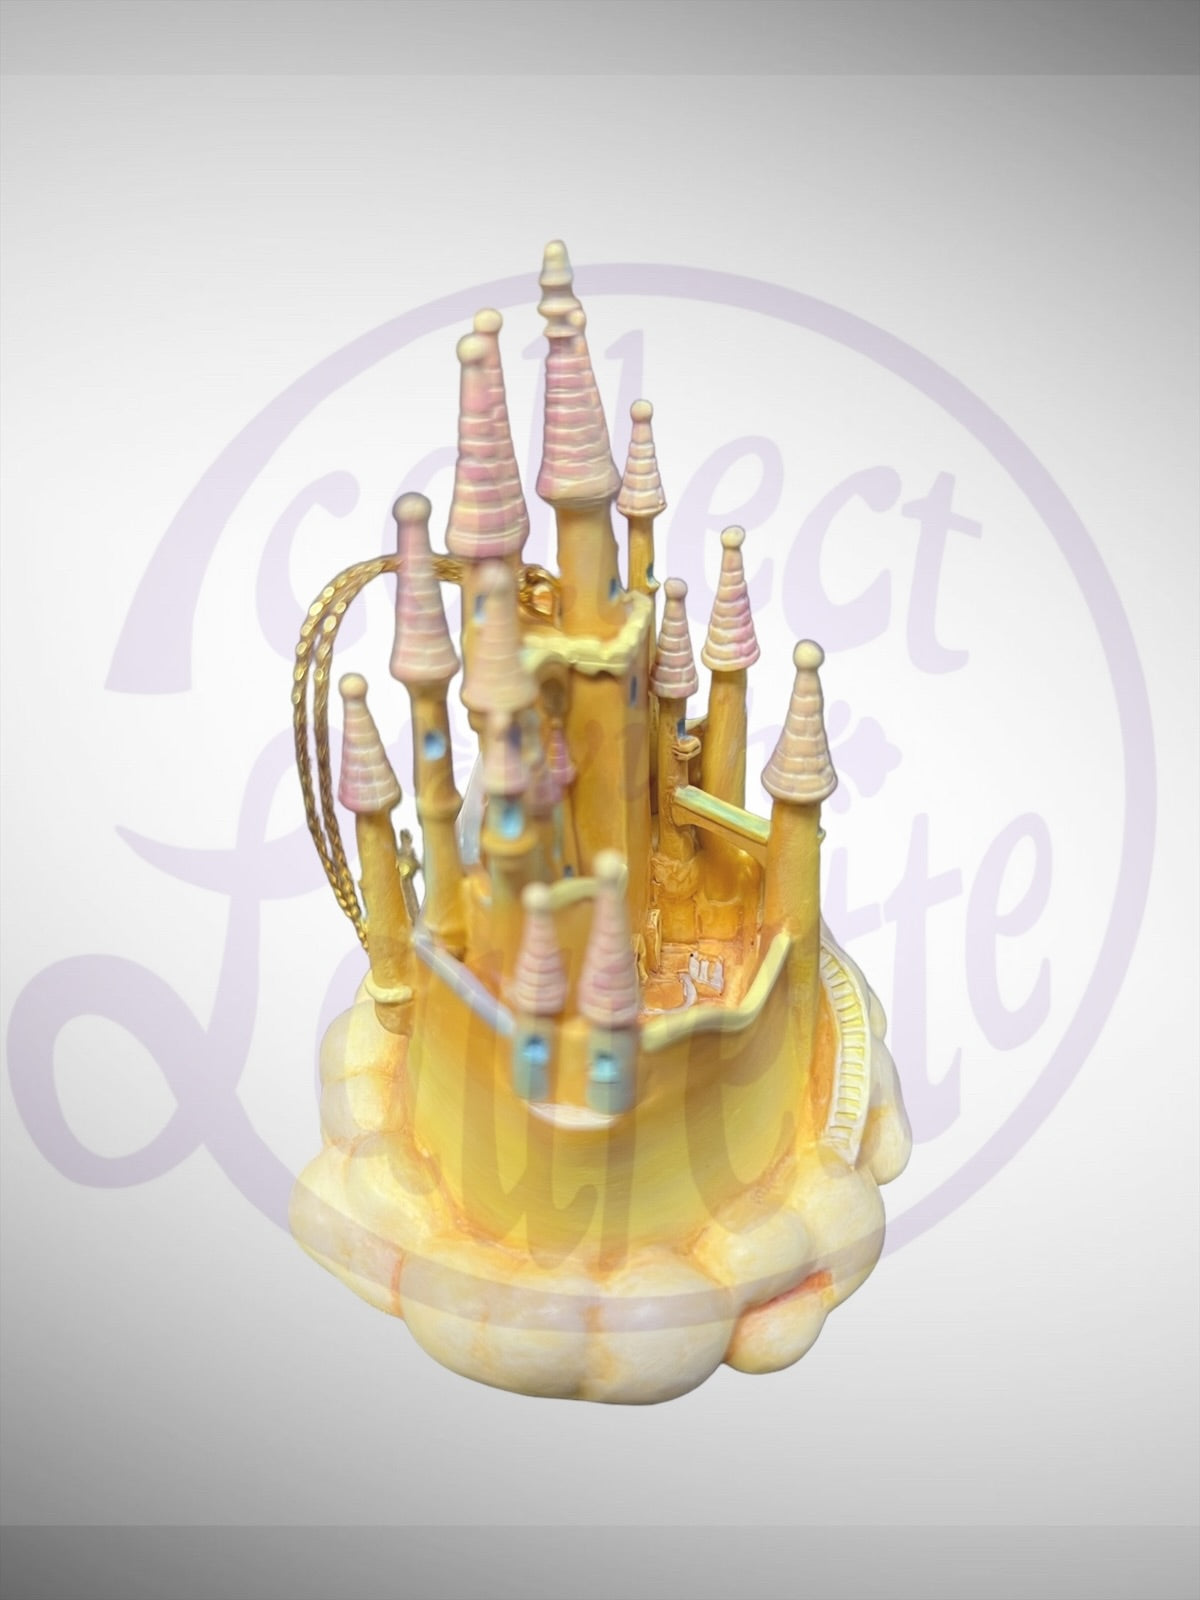 Walt Disney Classics Collection Enchanted Places - WDCC Snow White's Castle Ornament Figurine